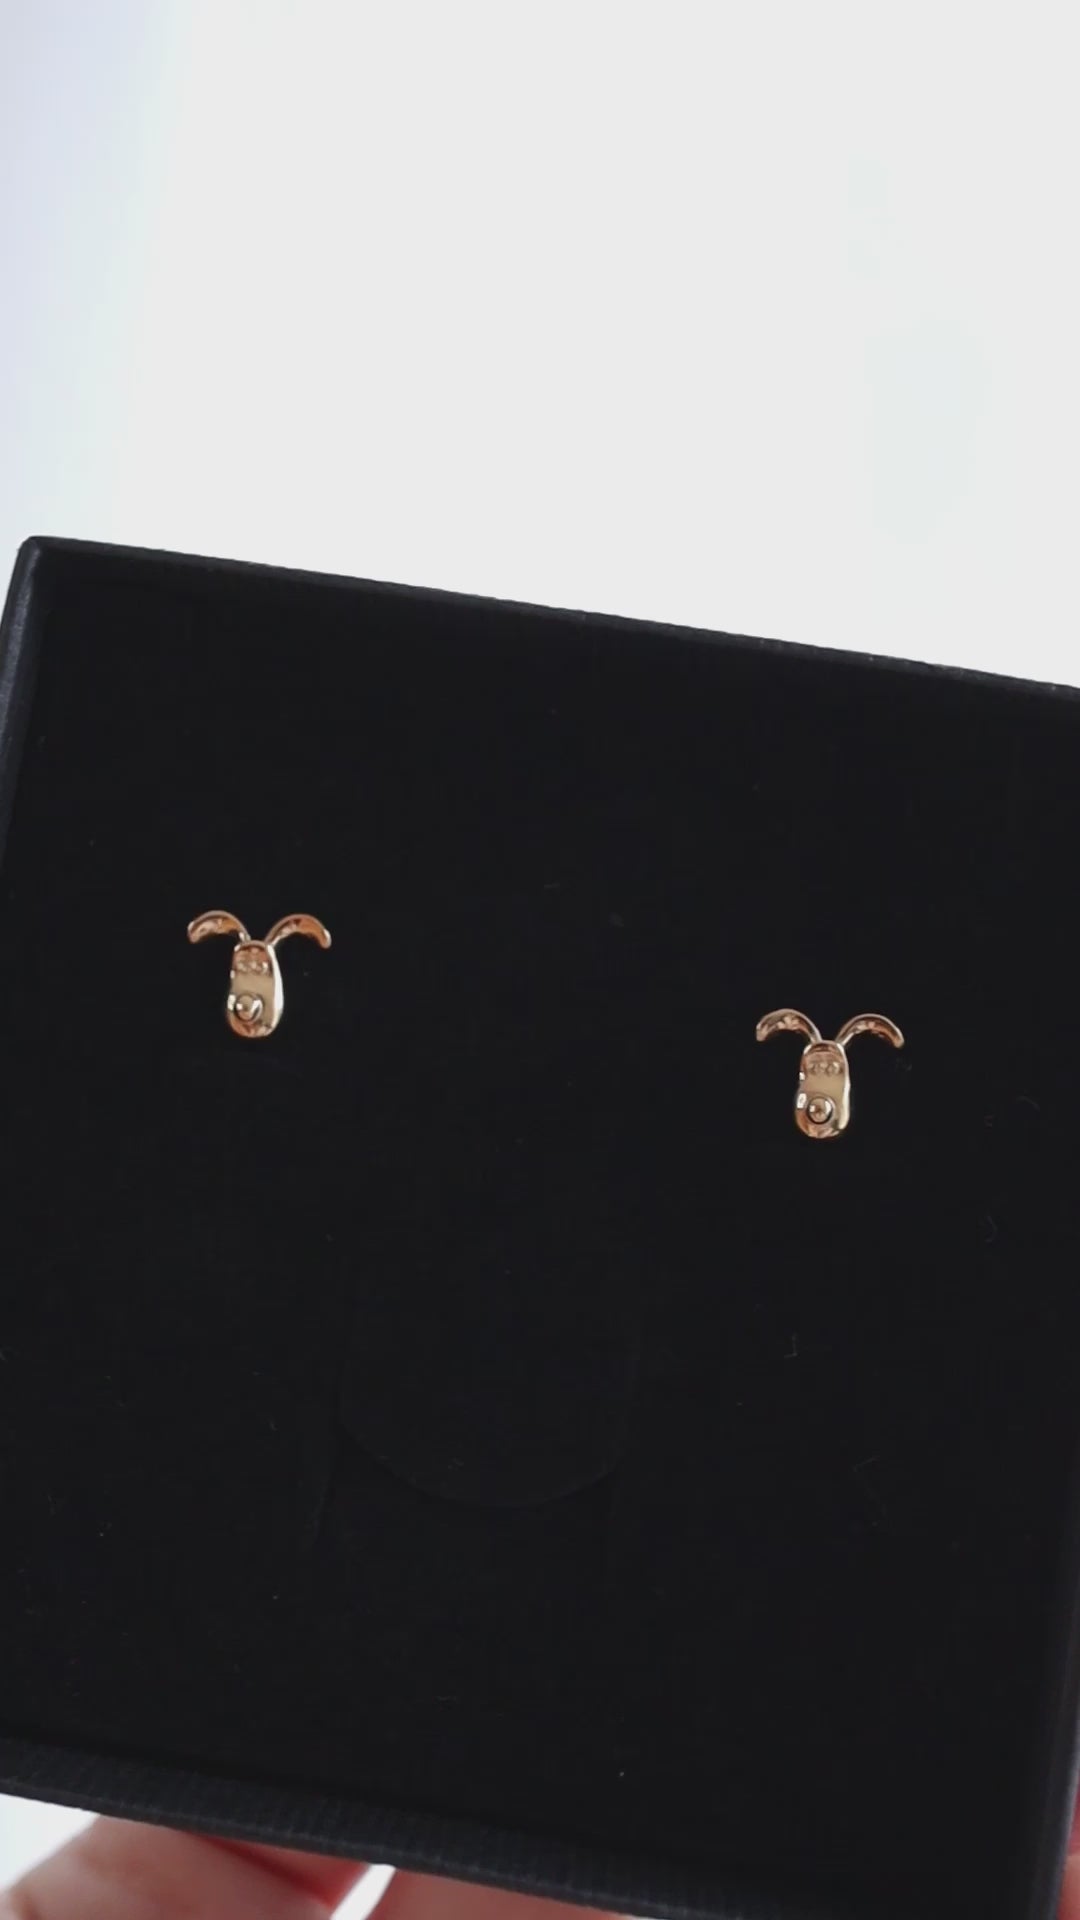 Gromit Stud Earrings (18ct Gold Vermeil)